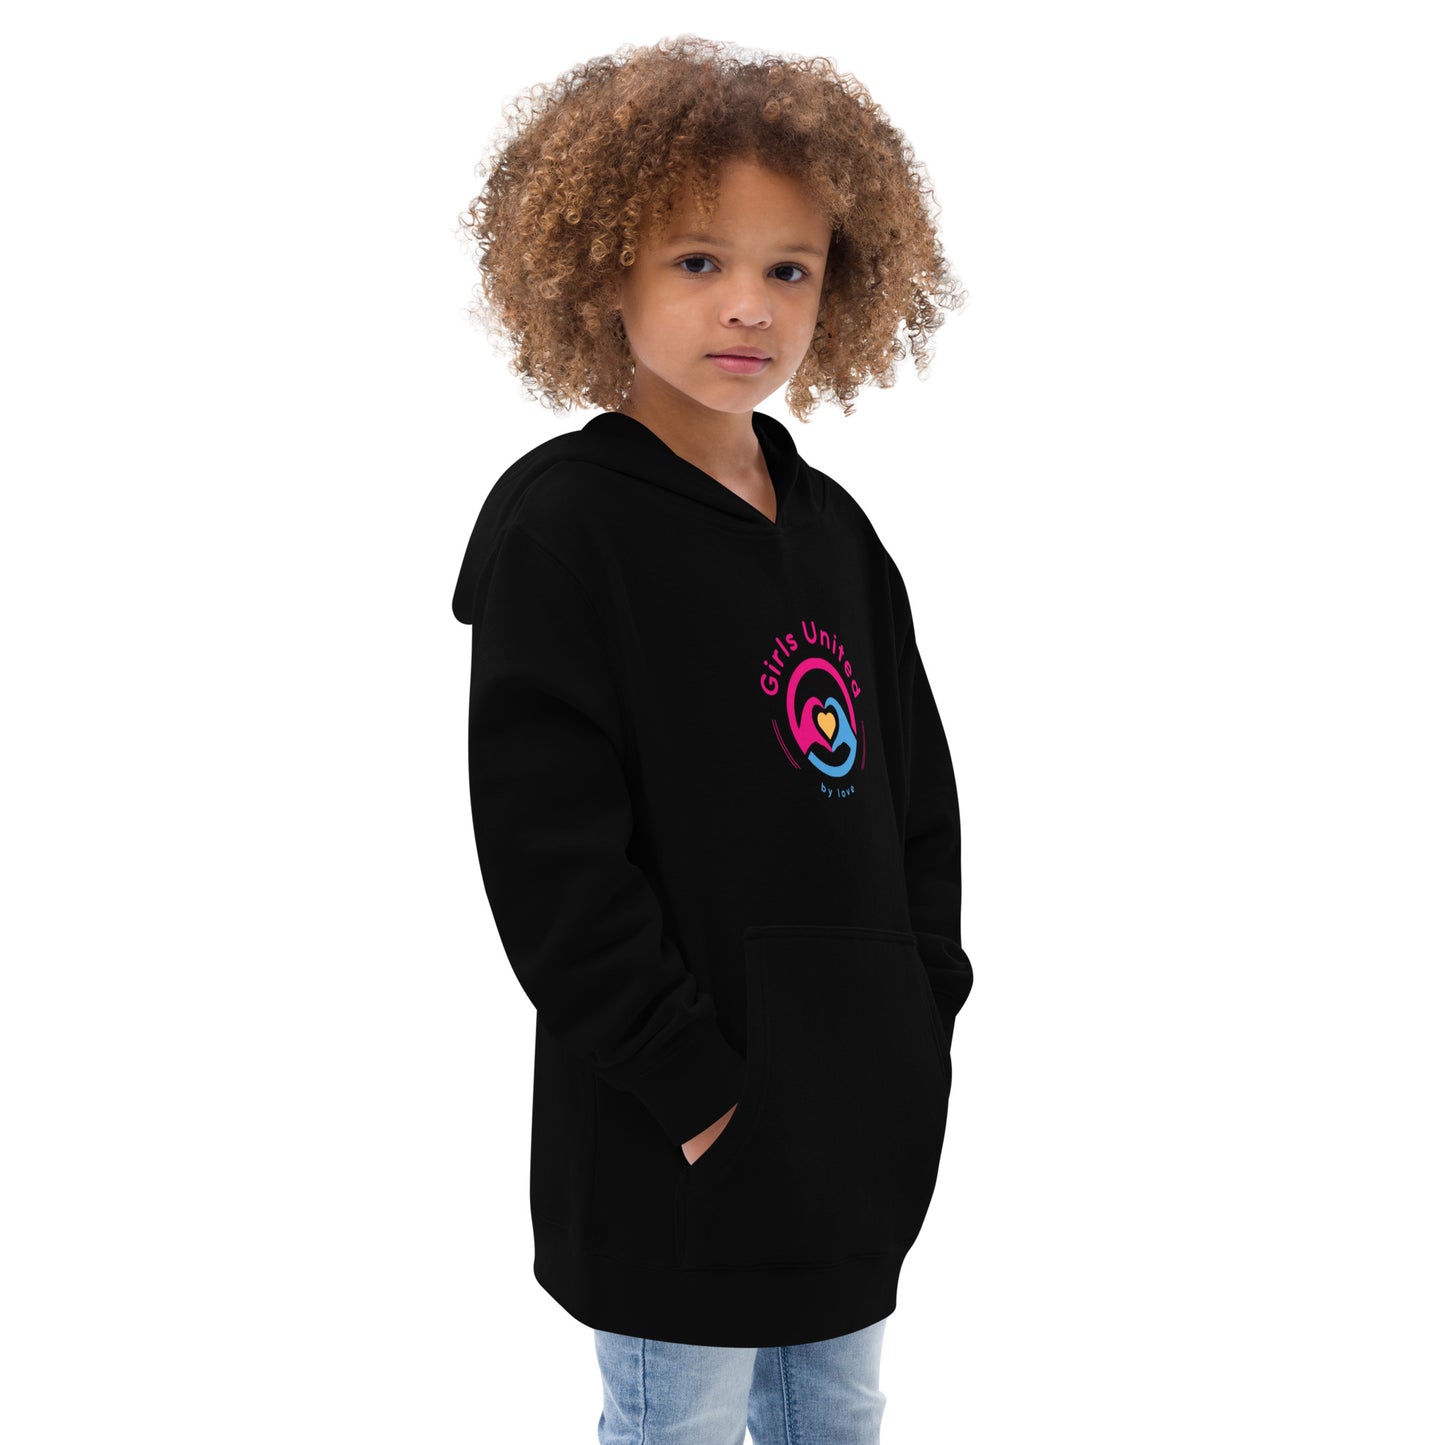 Girls United by Love Kids fleece hoodie